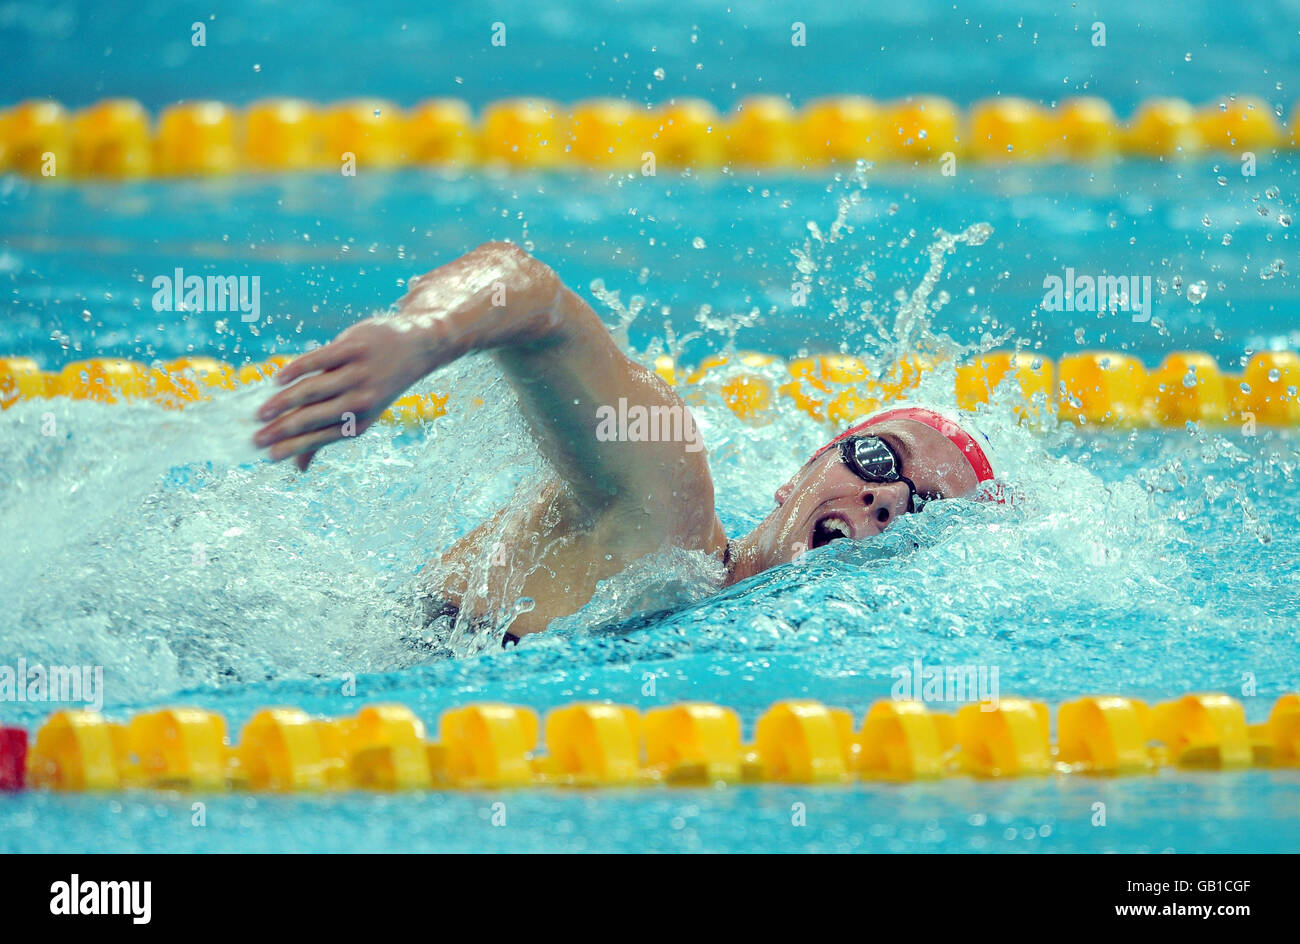 Großbritanniens Thomas Haffield in Aktion in der Männer 400 m Einzel Medley im National Aquatic Center in Peking, China. Stockfoto